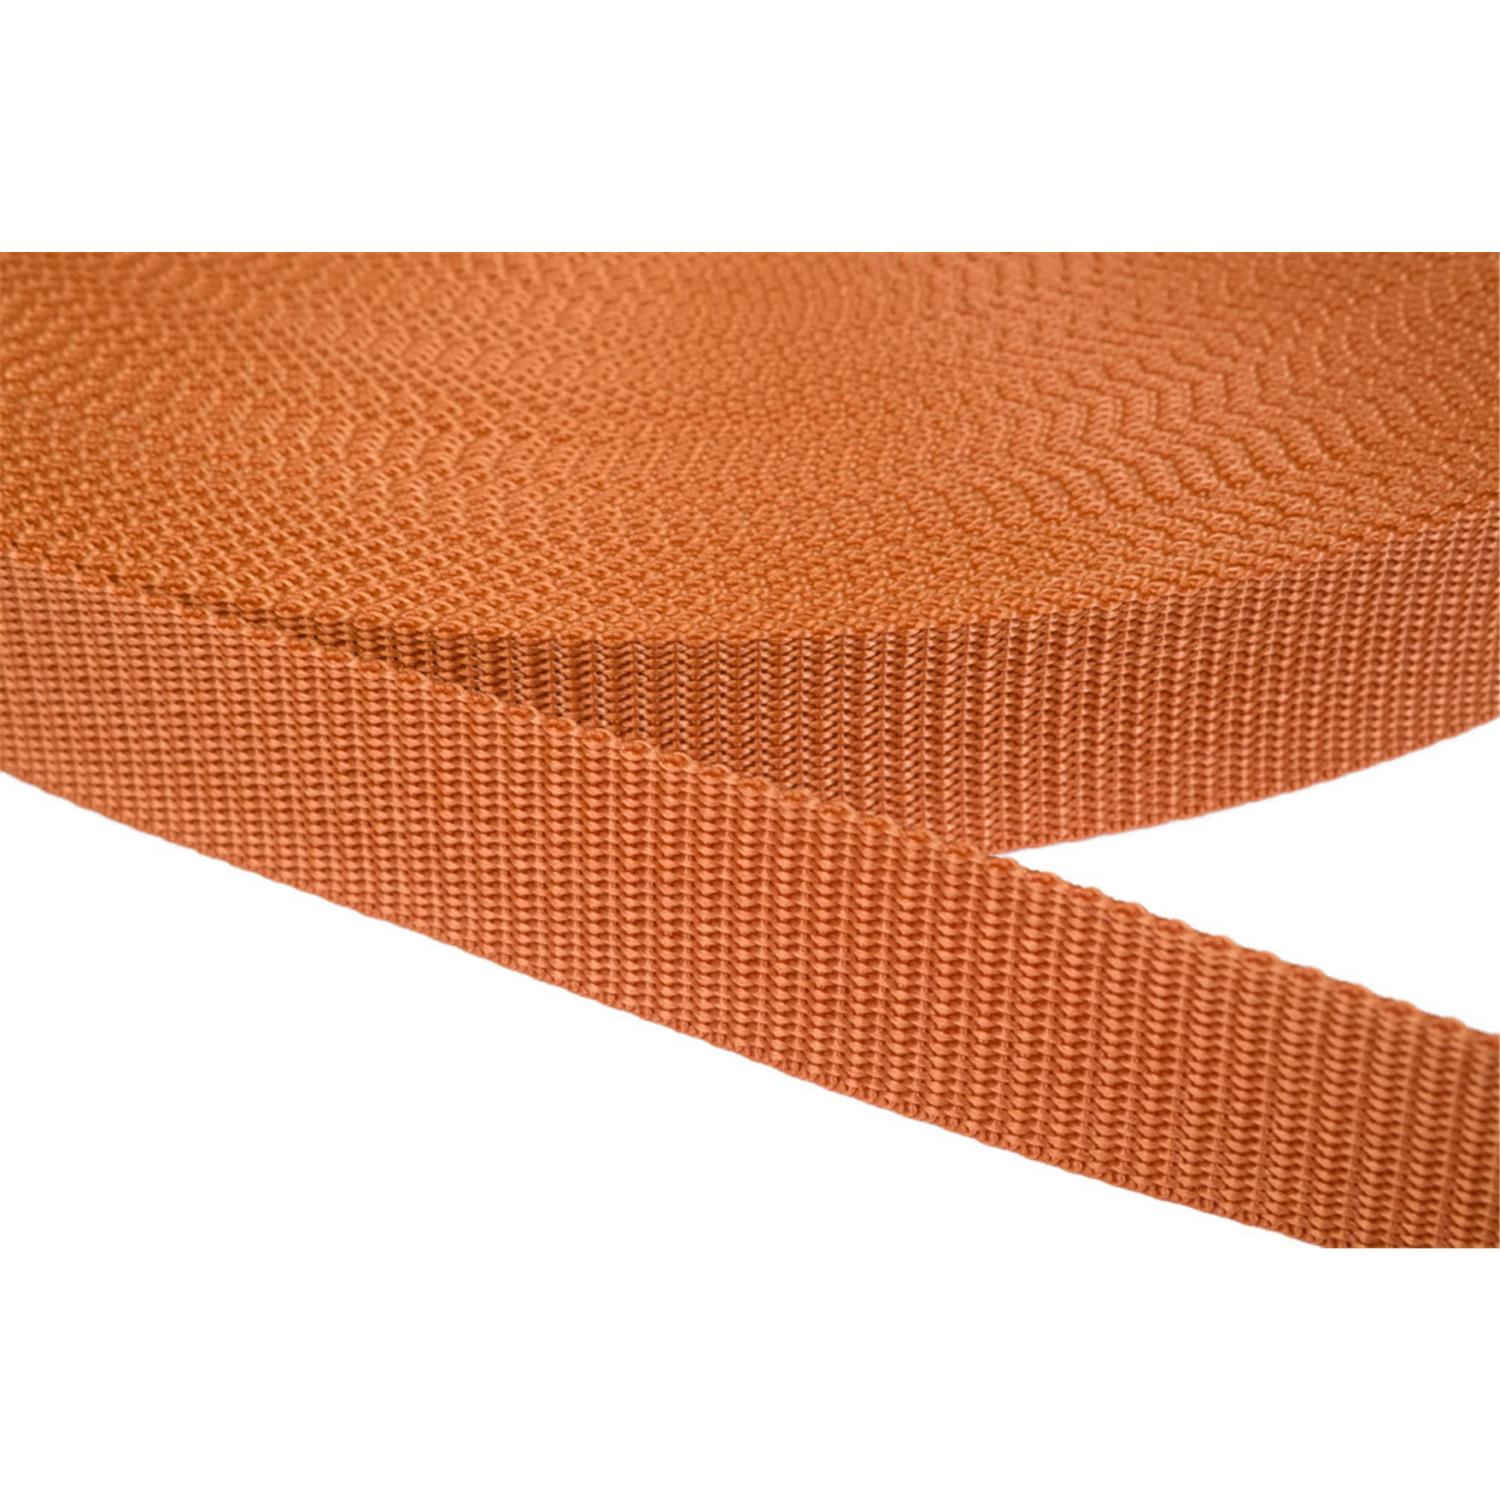 Gurtband 15mm breit aus Polypropylen in 41 Farben 05 - ockerbraun 50 Meter